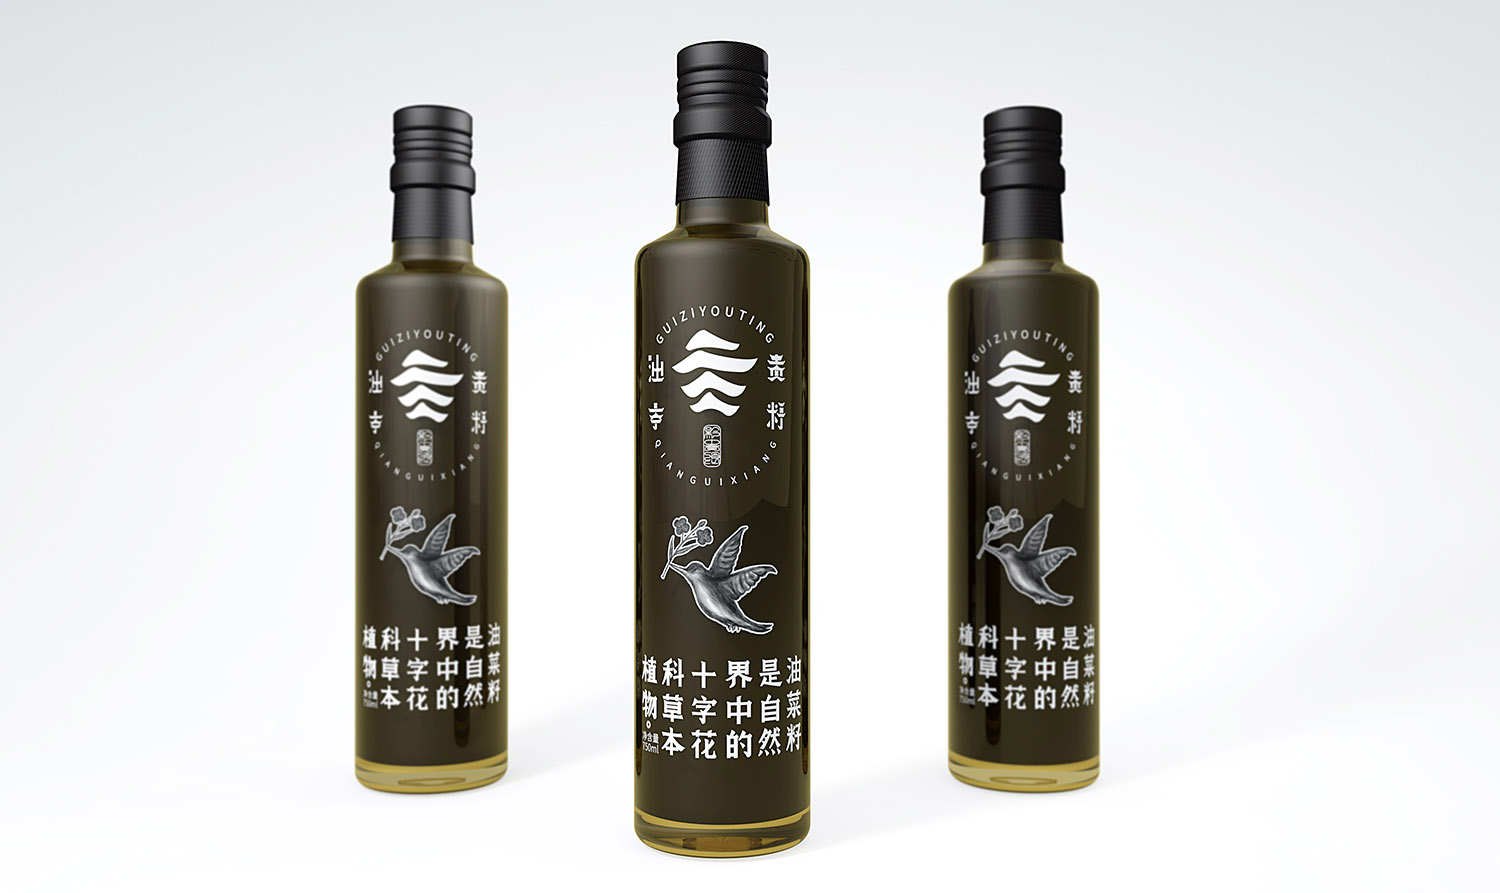 菜籽油产品包装设计